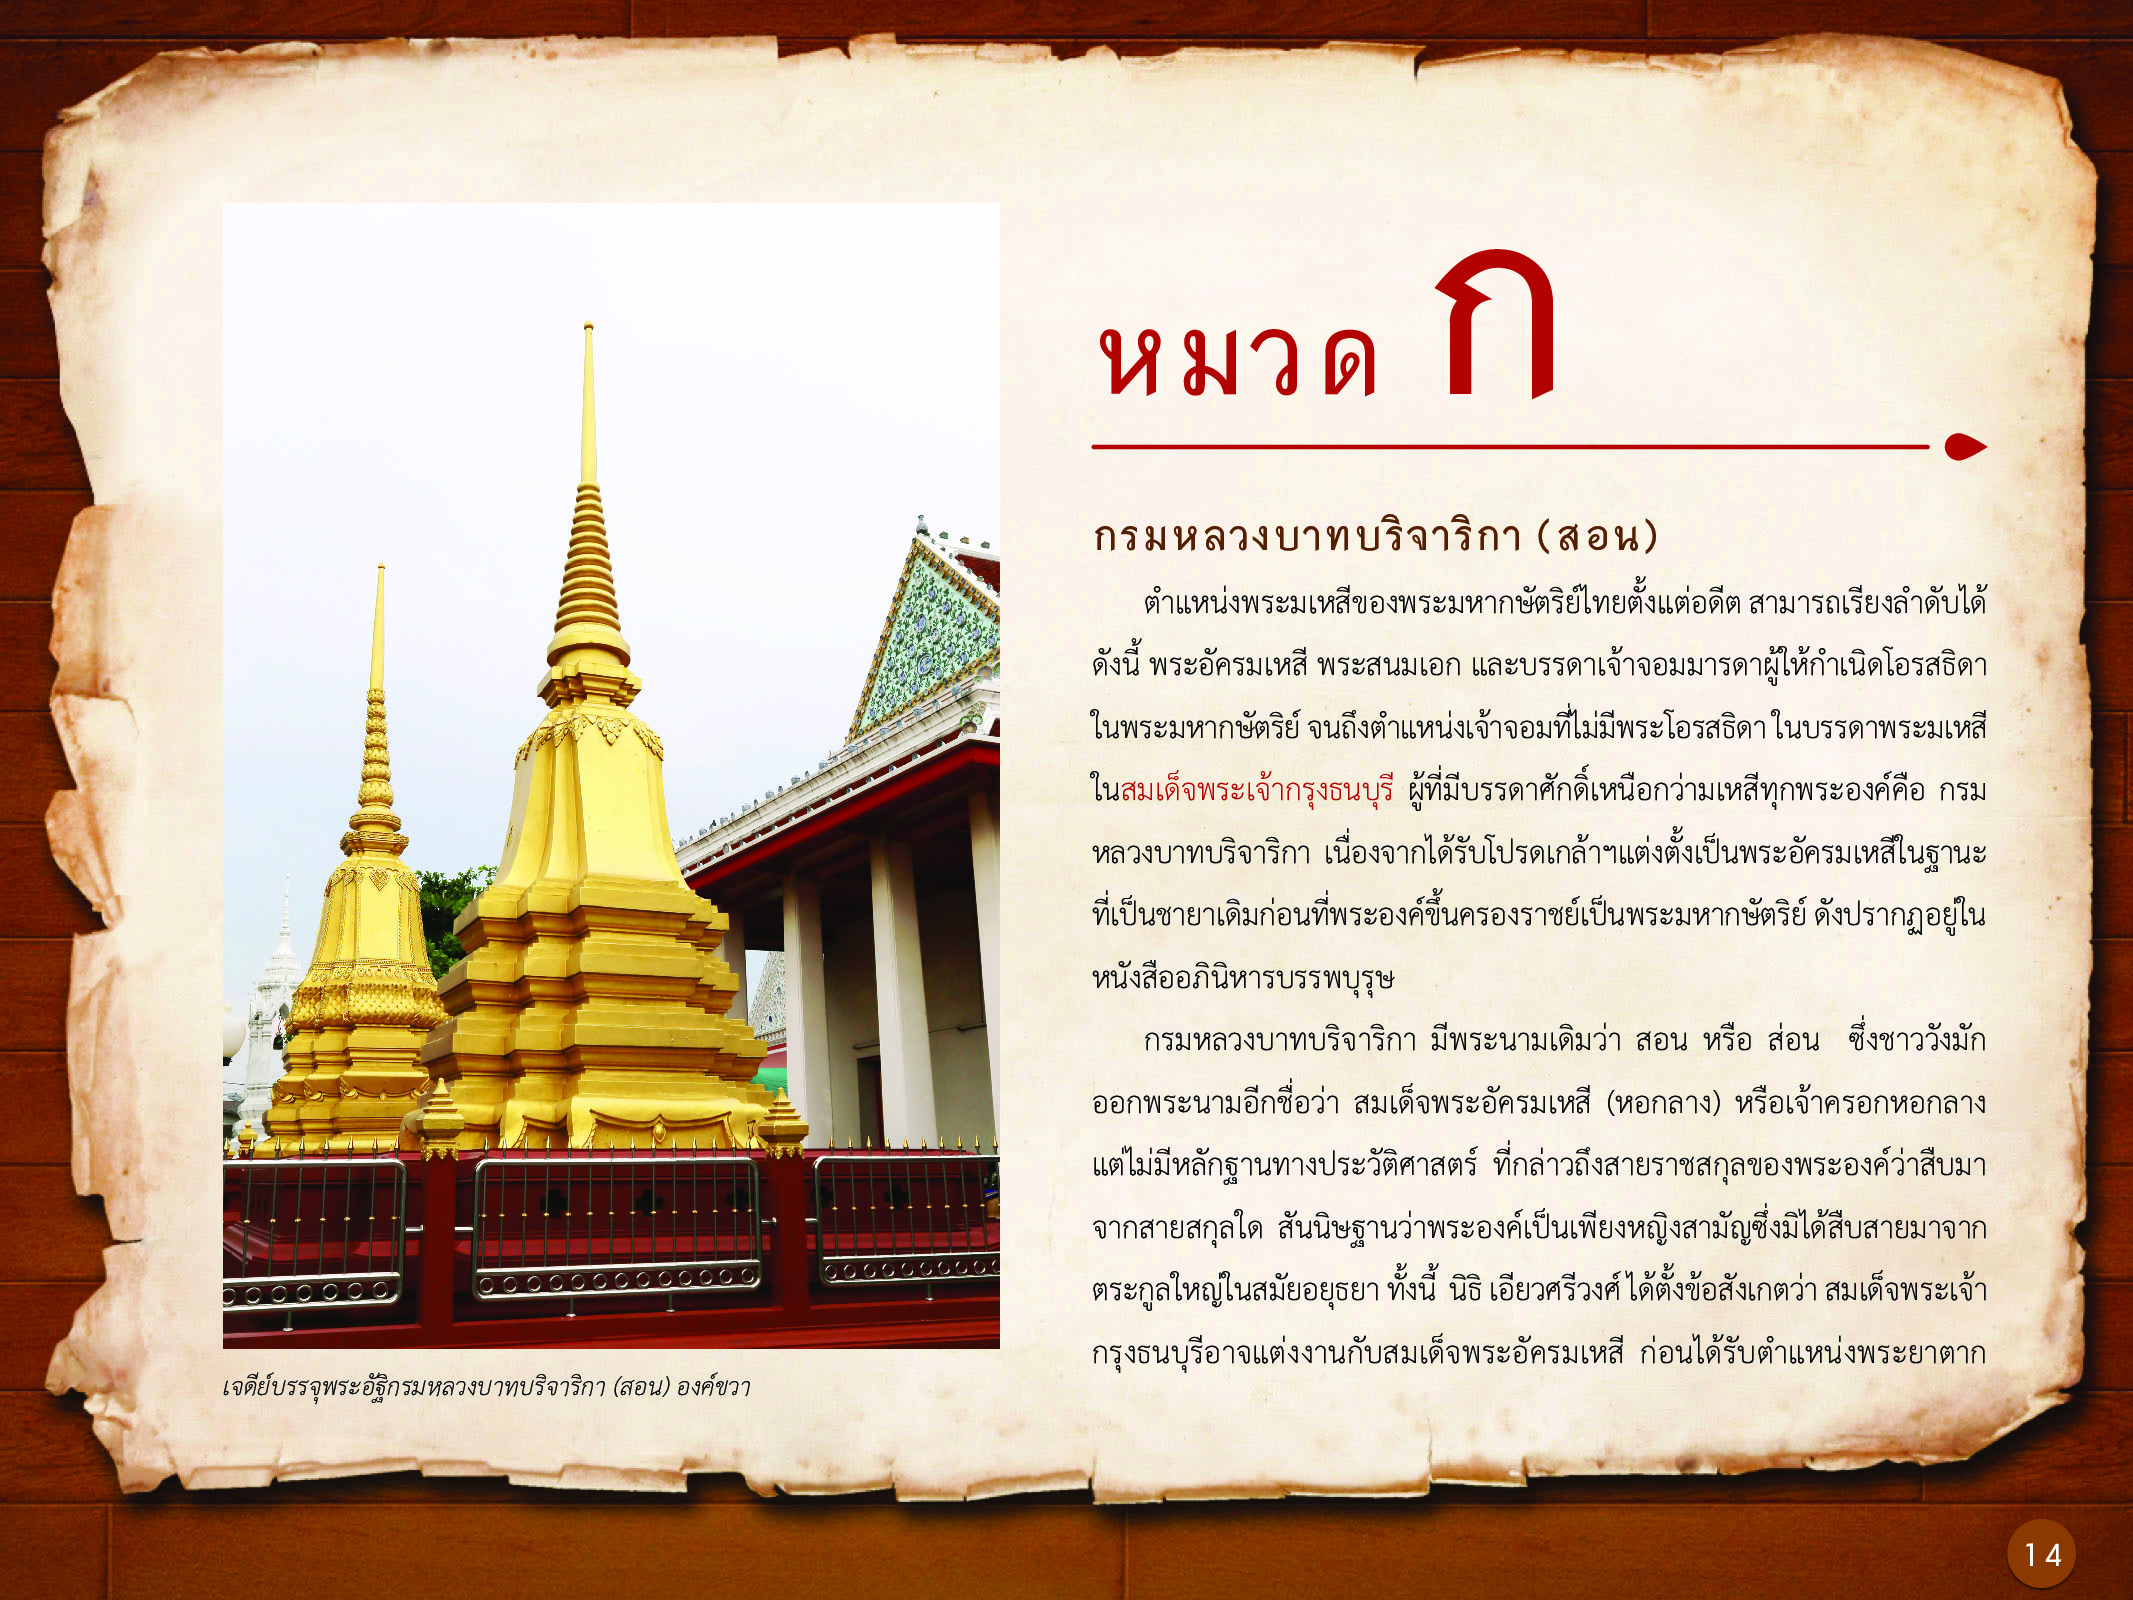 ประวัติศาสตร์กรุงธนบุรี ./images/history_dhonburi/14.jpg